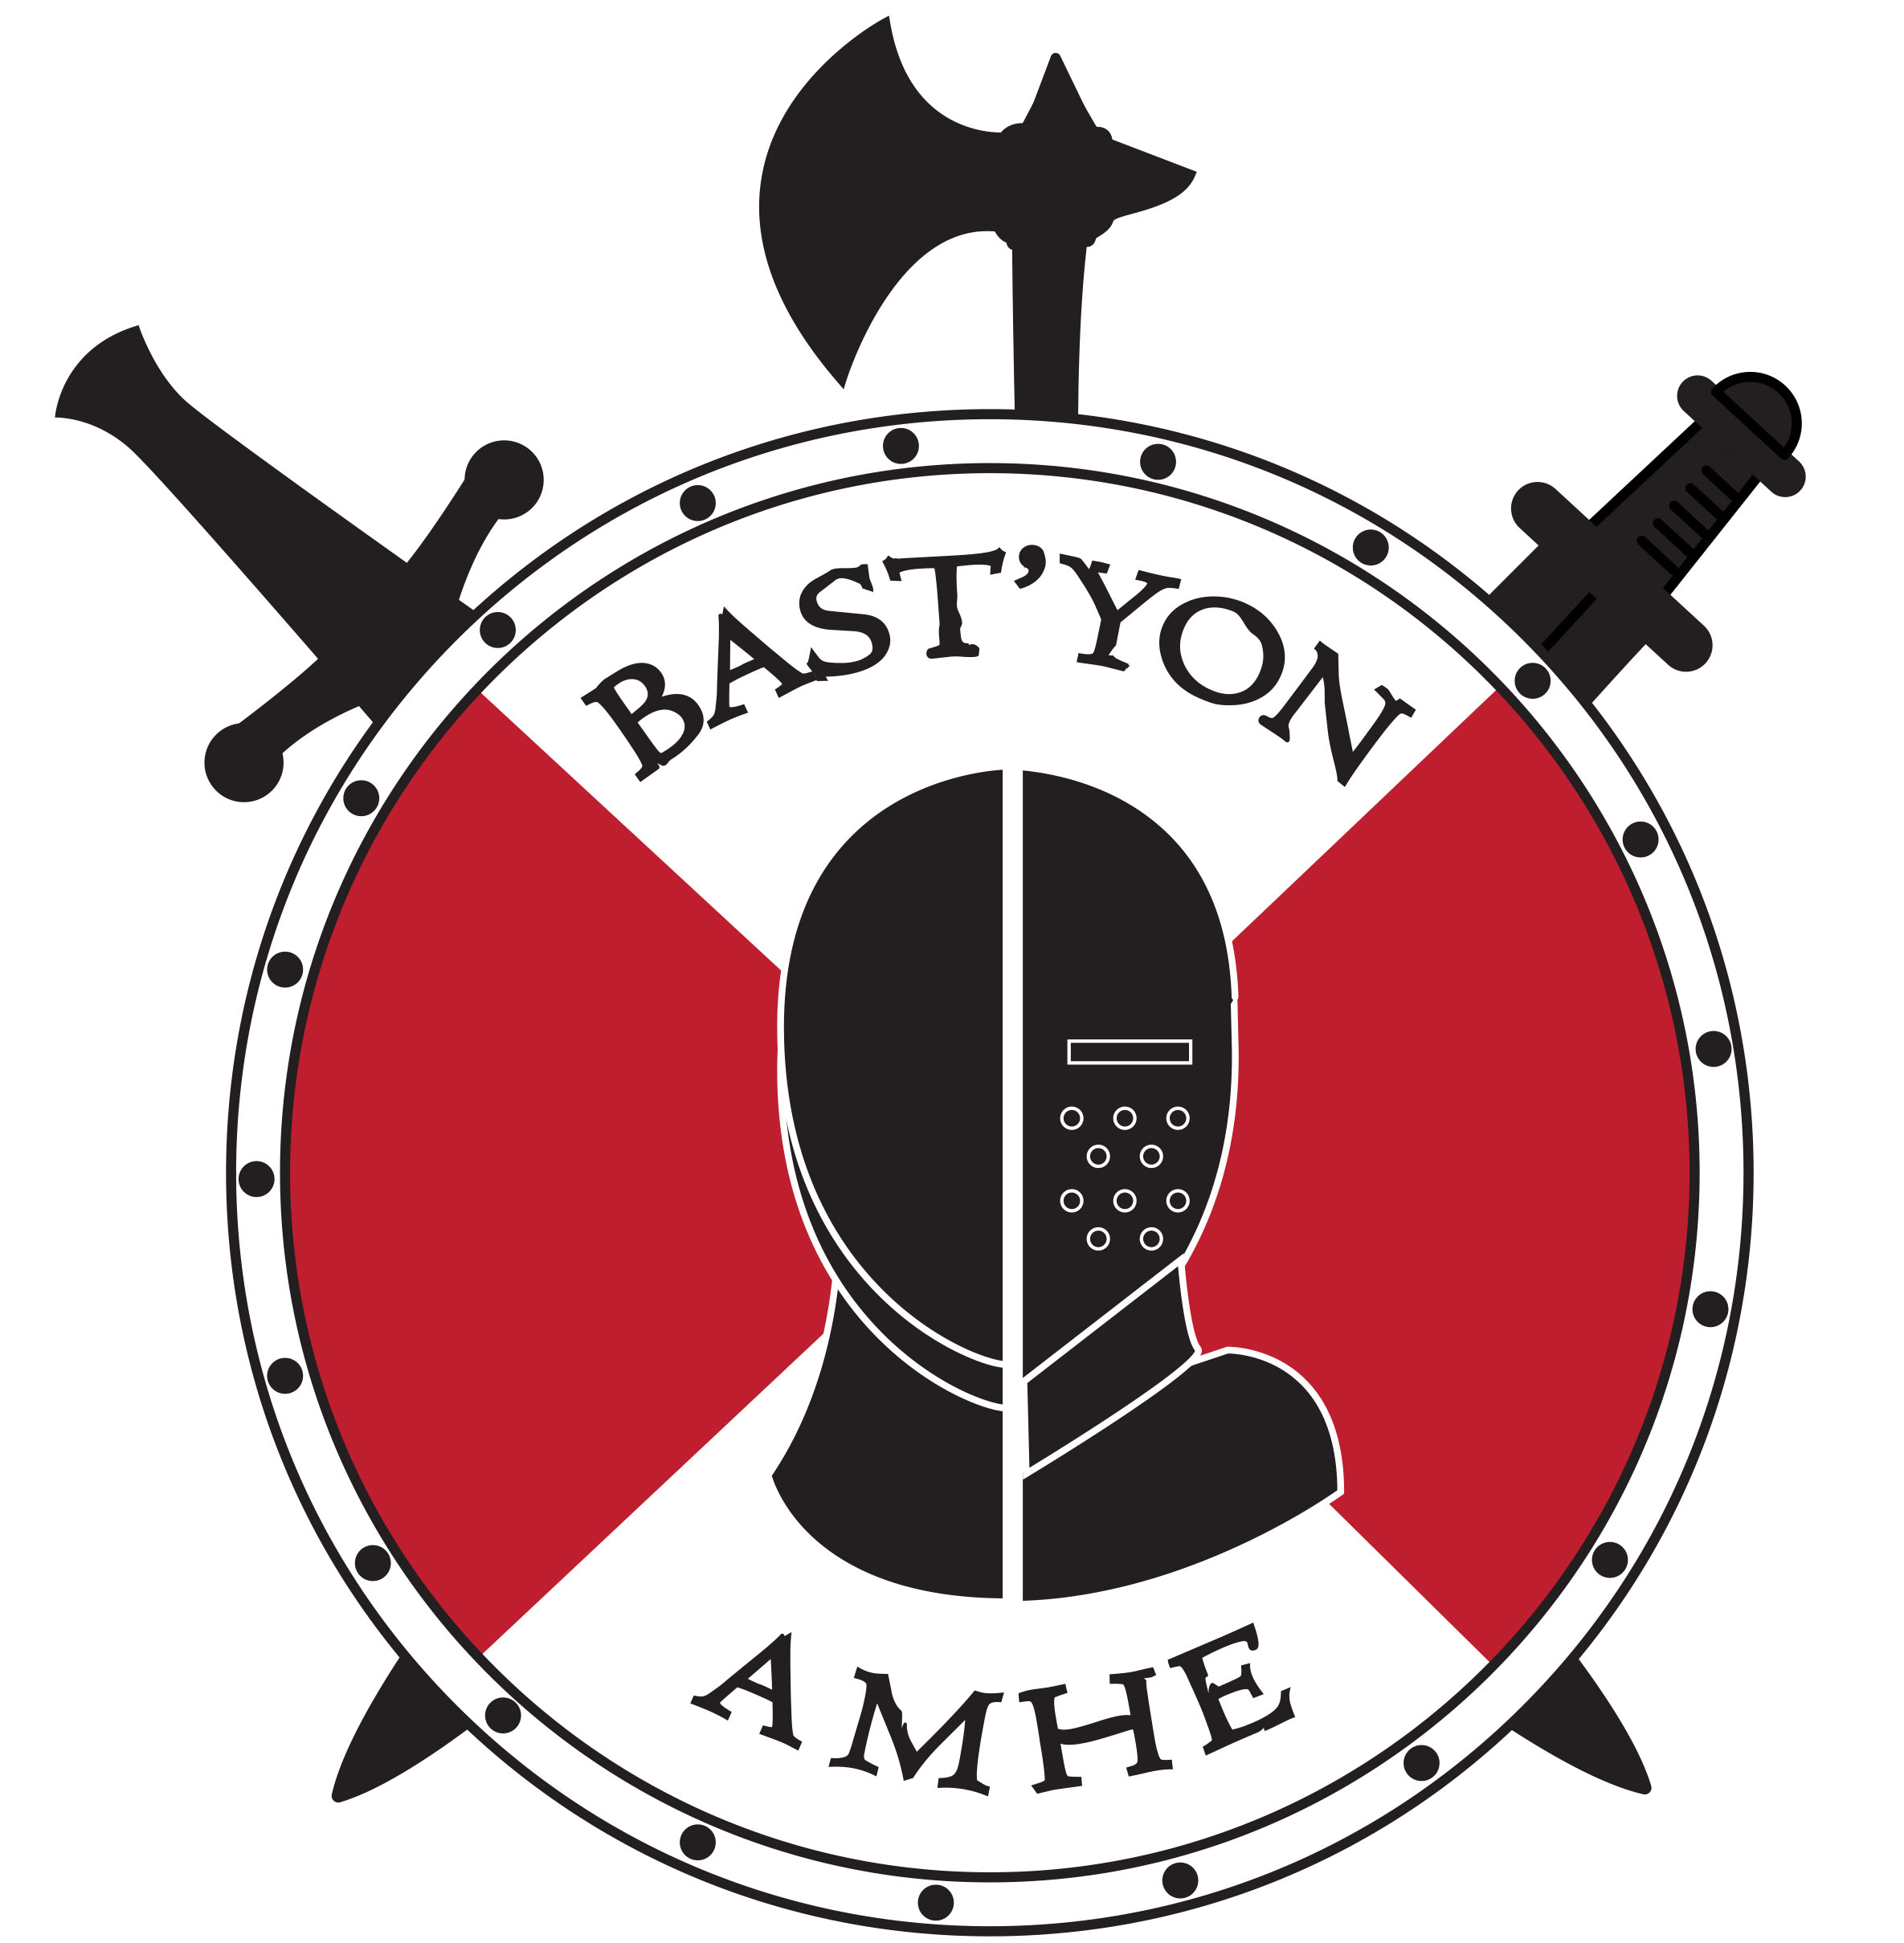 Logo-AMHE-BAST-YON.jpg